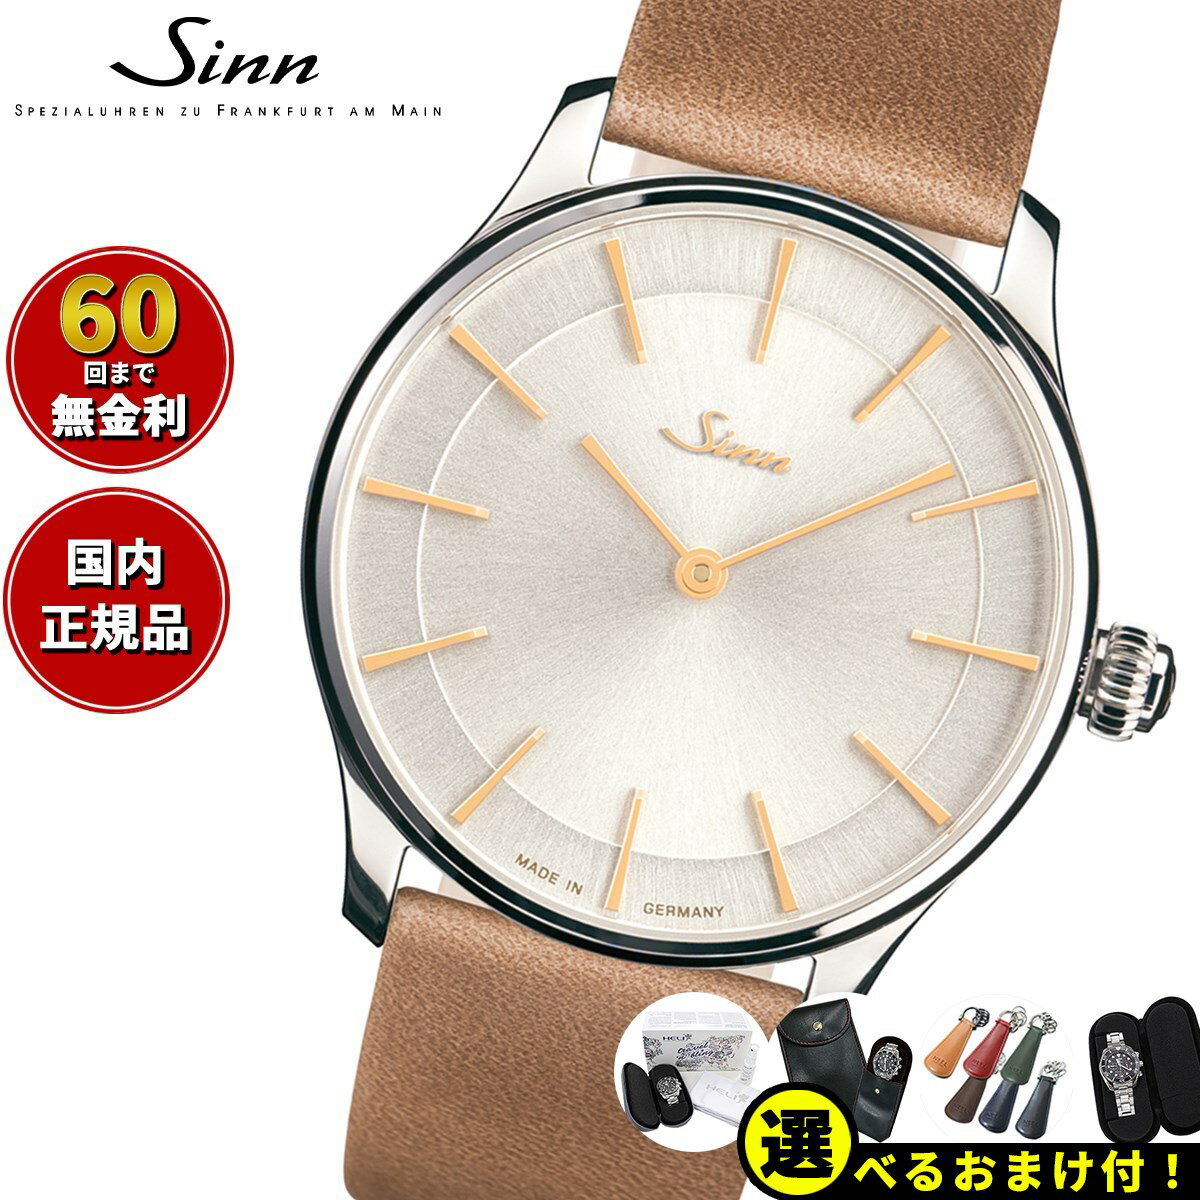 【選べるノベルティー付き！】【60回分割手数料無料！】Sinn ジン 1736.ST.I.4N 自動巻き 腕時計 メンズ Classic Timepieces クラシックモデル カーフレザーストラップ ドイツ製